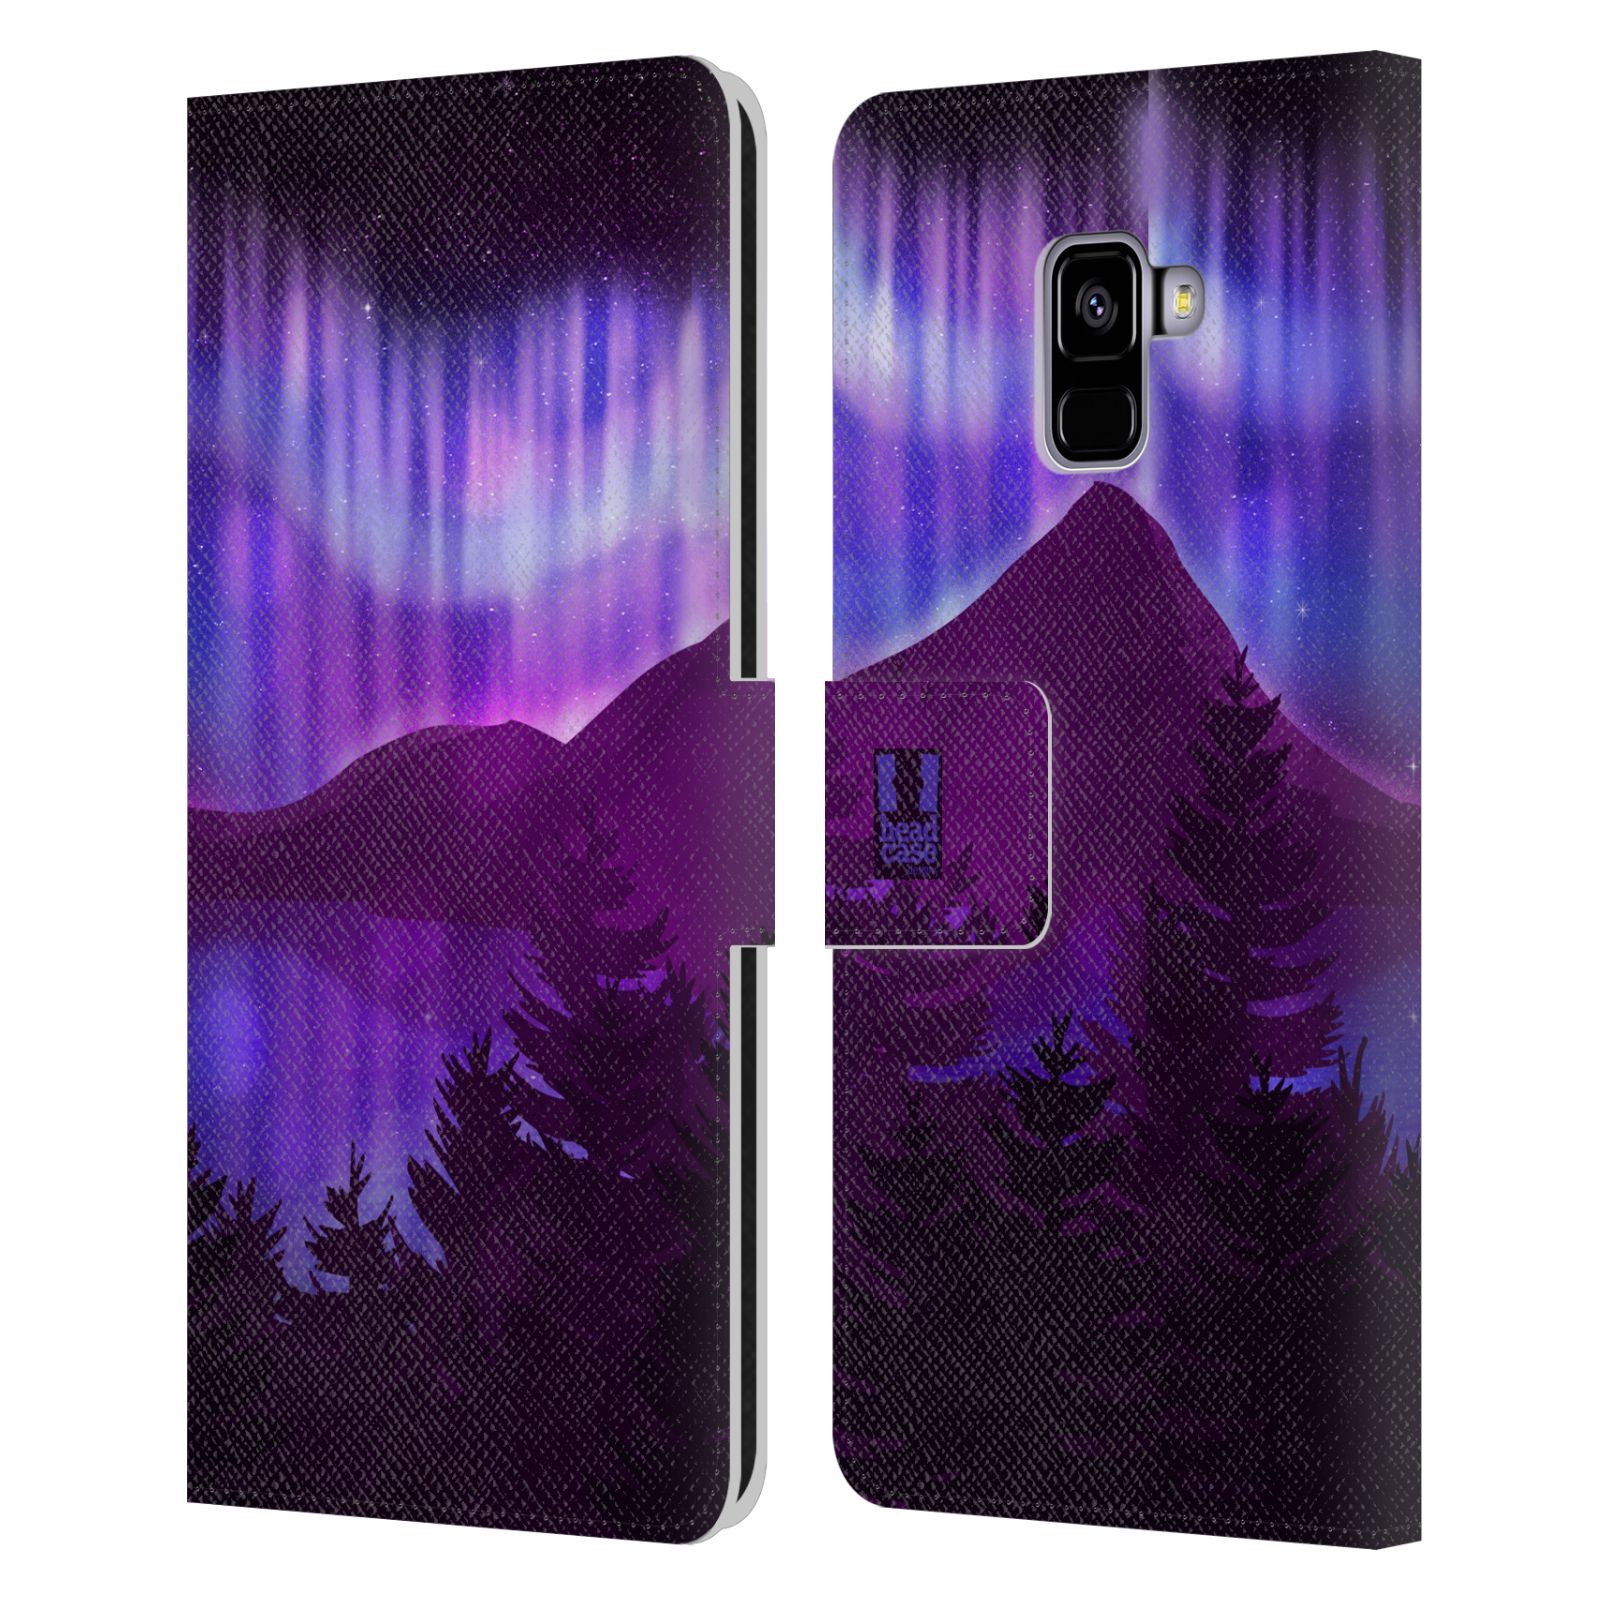 Pouzdro na mobil Samsung Galaxy A8+ 2018 - HEAD CASE - Hory a lesy fialový odstín